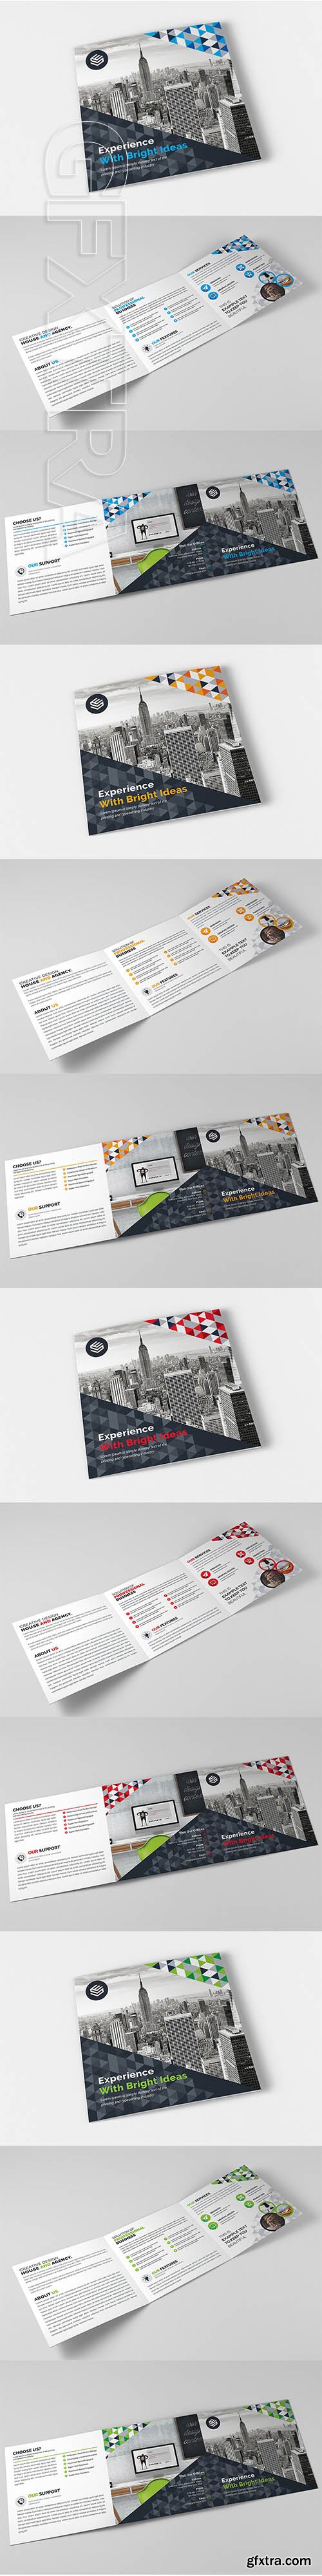 CreativeMarket - Square Tri-Fold Brochure 2095164